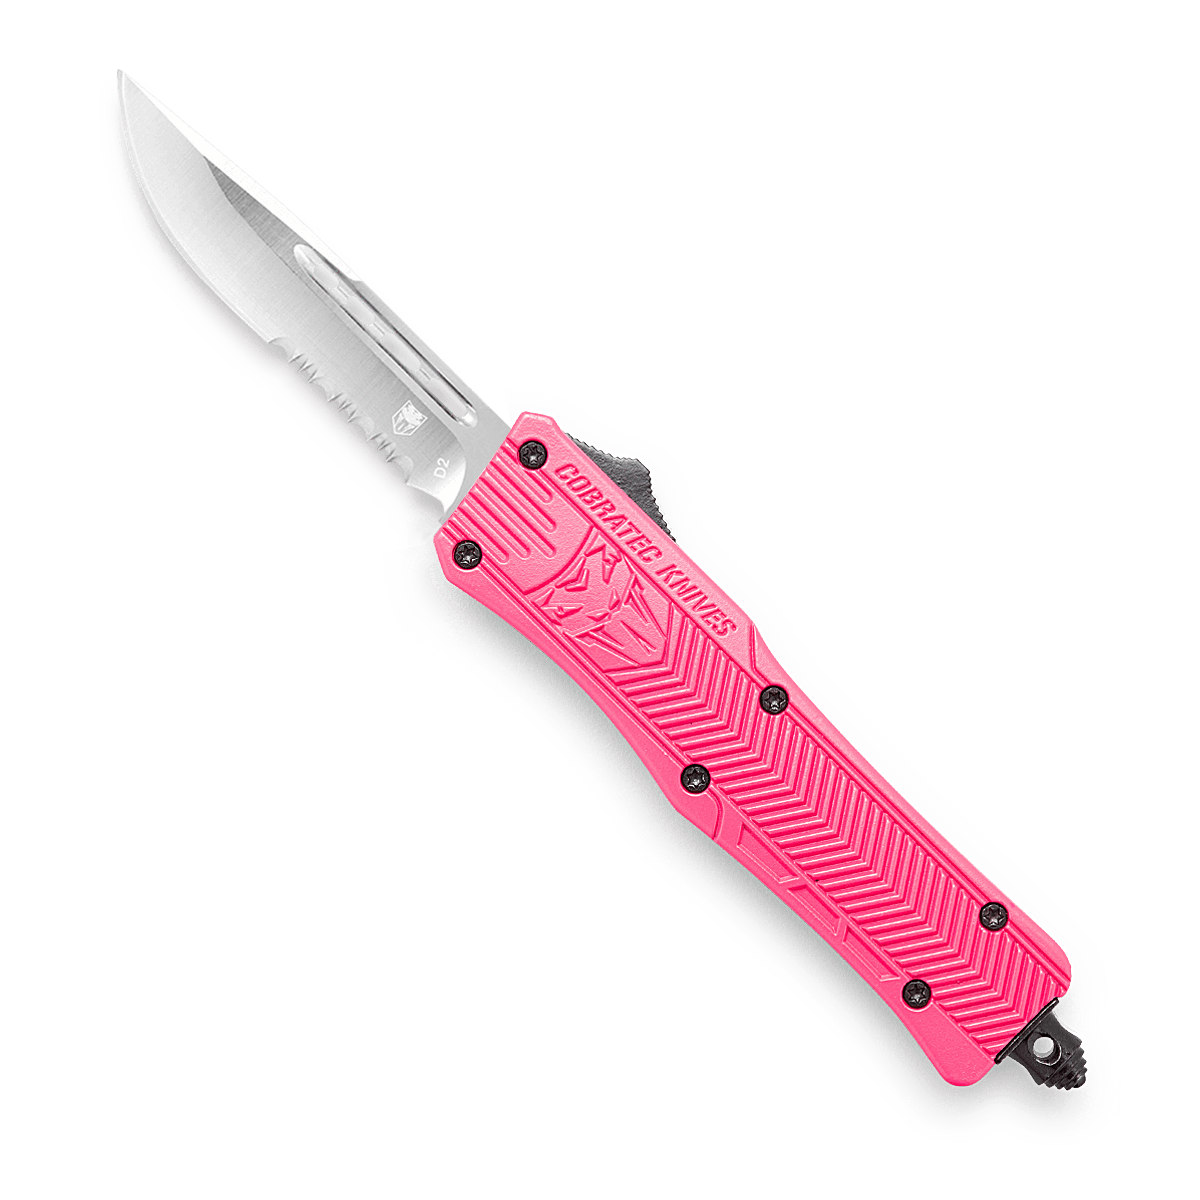 The Original Pink Box Pb1auk Auto-Loading Utility Knife, Pink